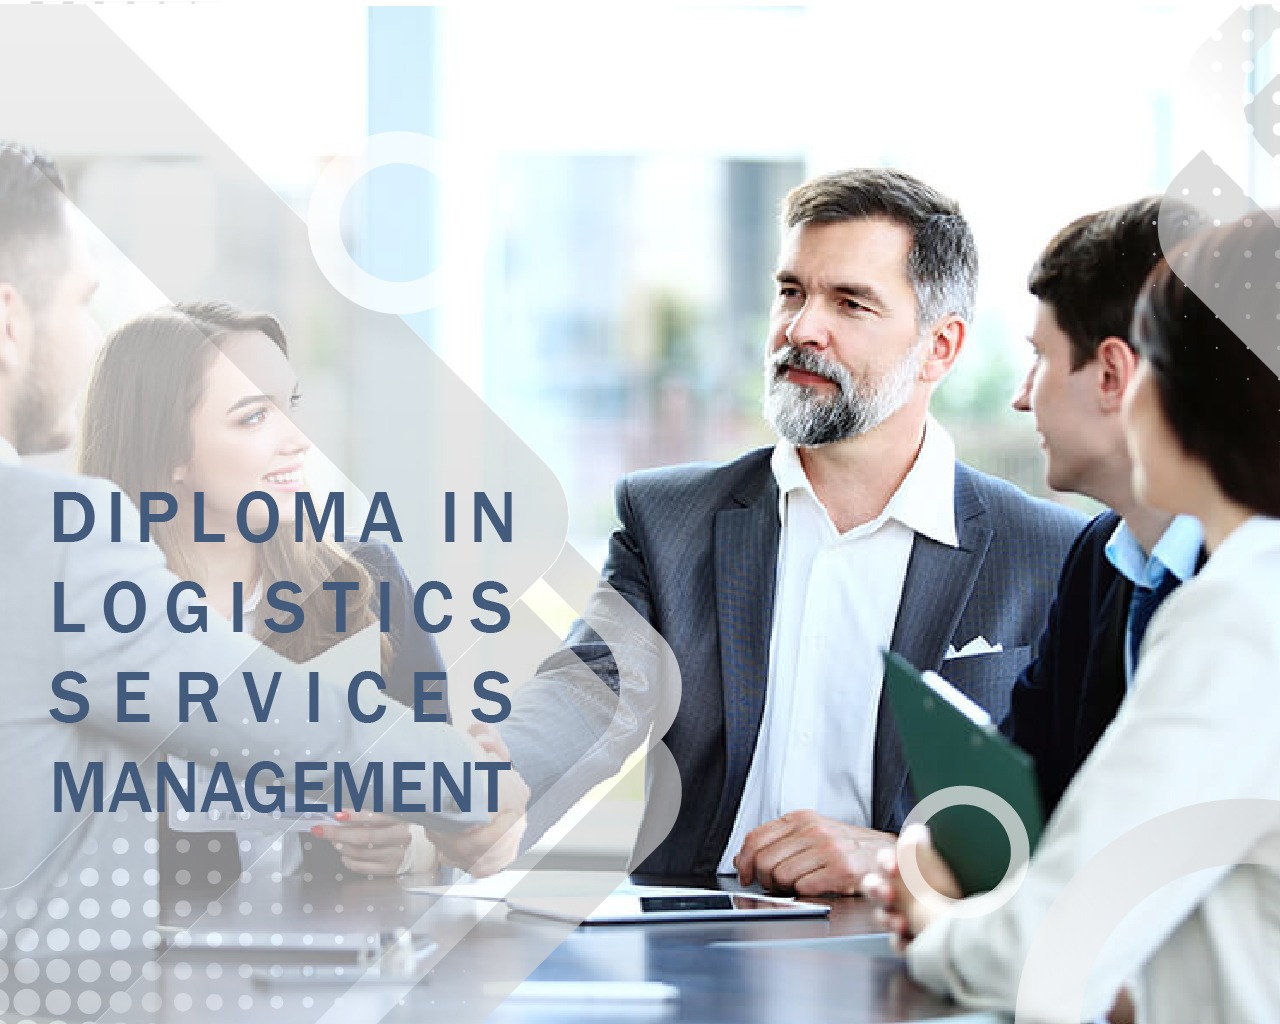 Management diploma in logistics